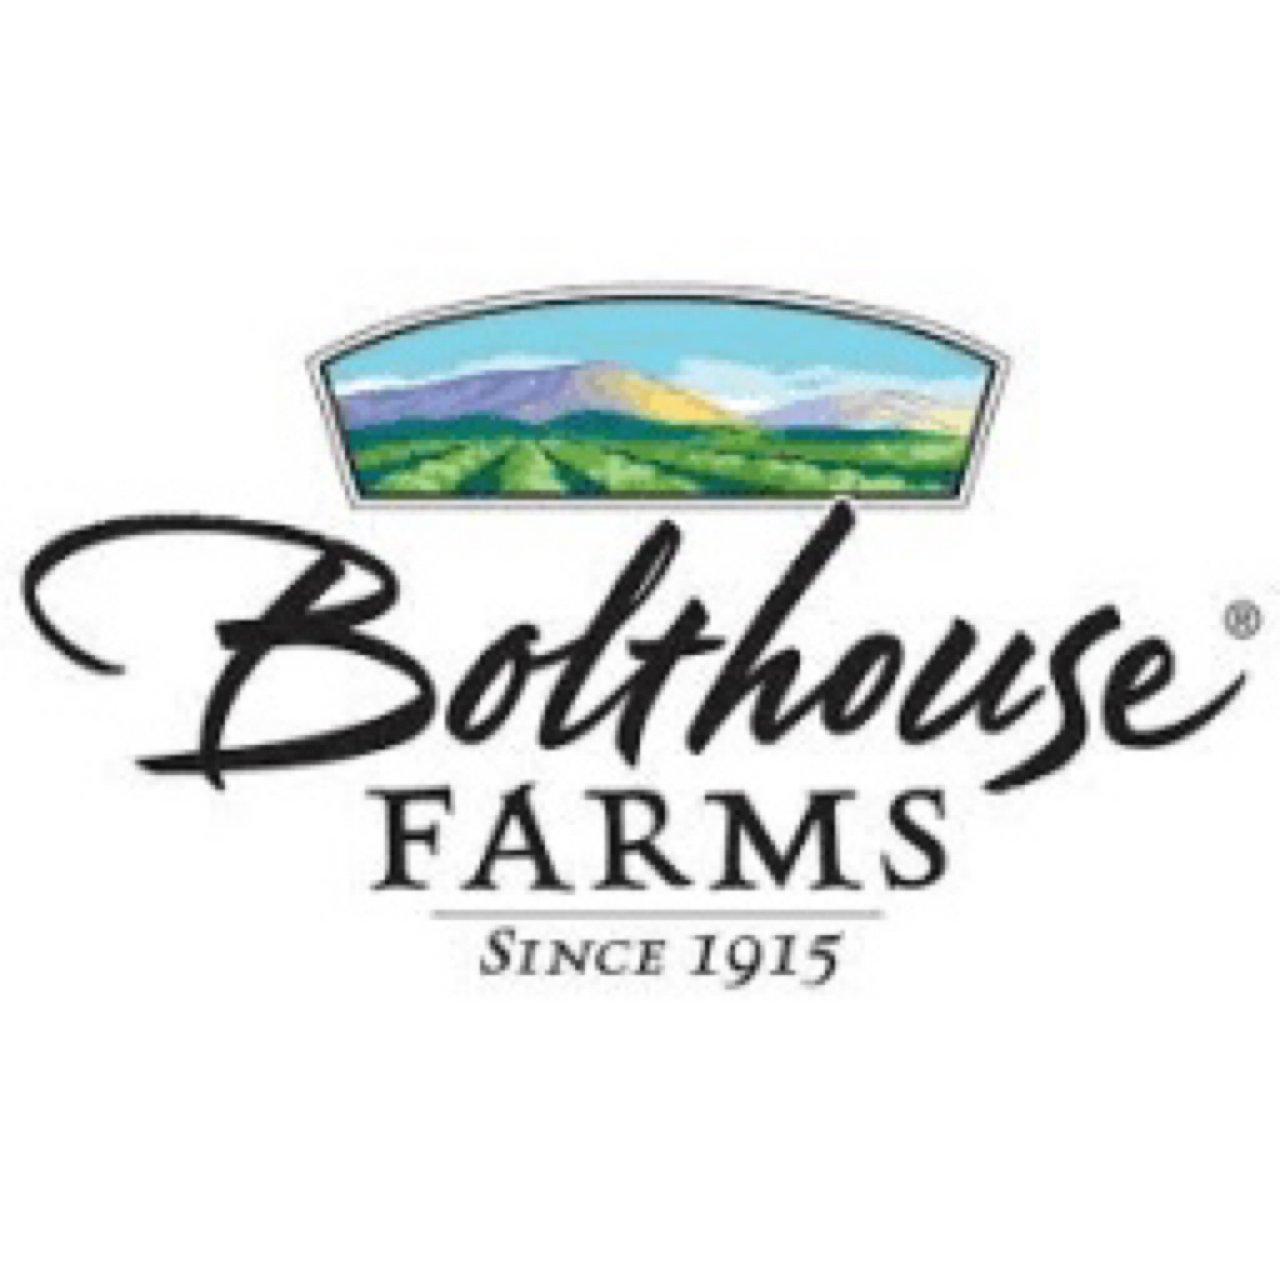 Bolthouse FARMS